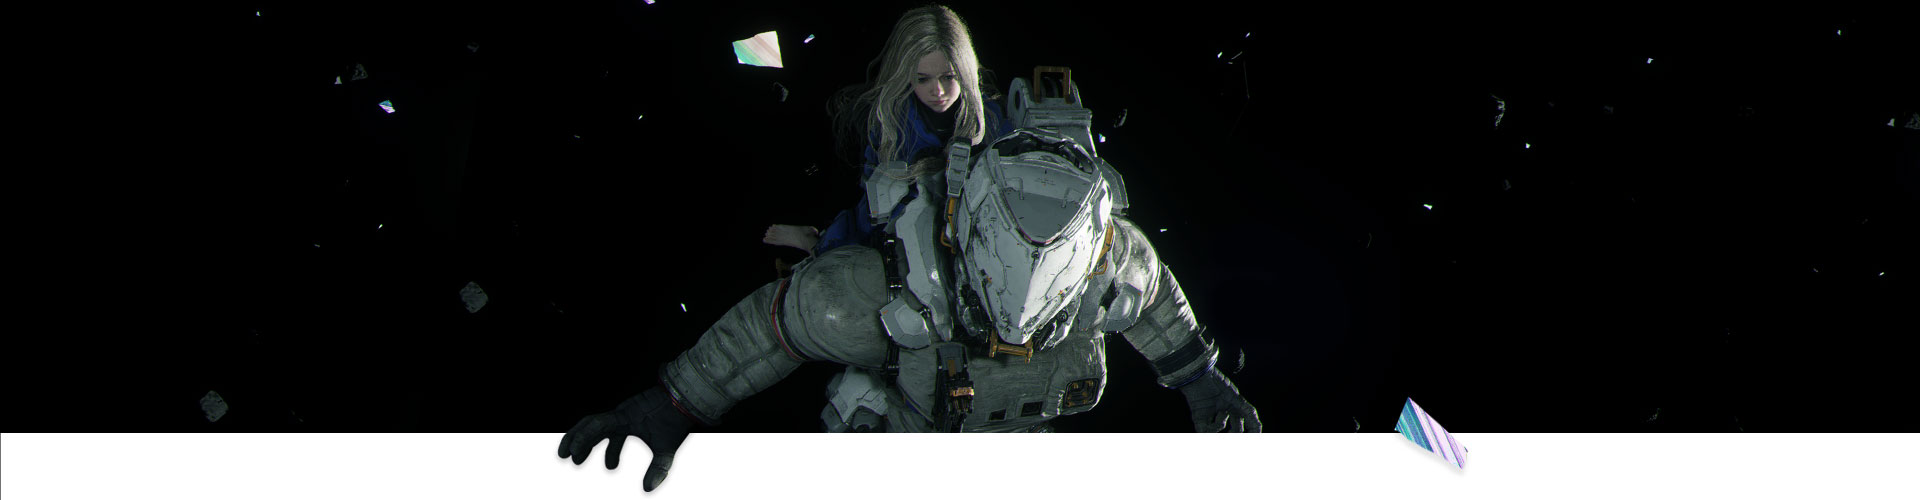 Une fille monte sur un astronaute à travers l’espace